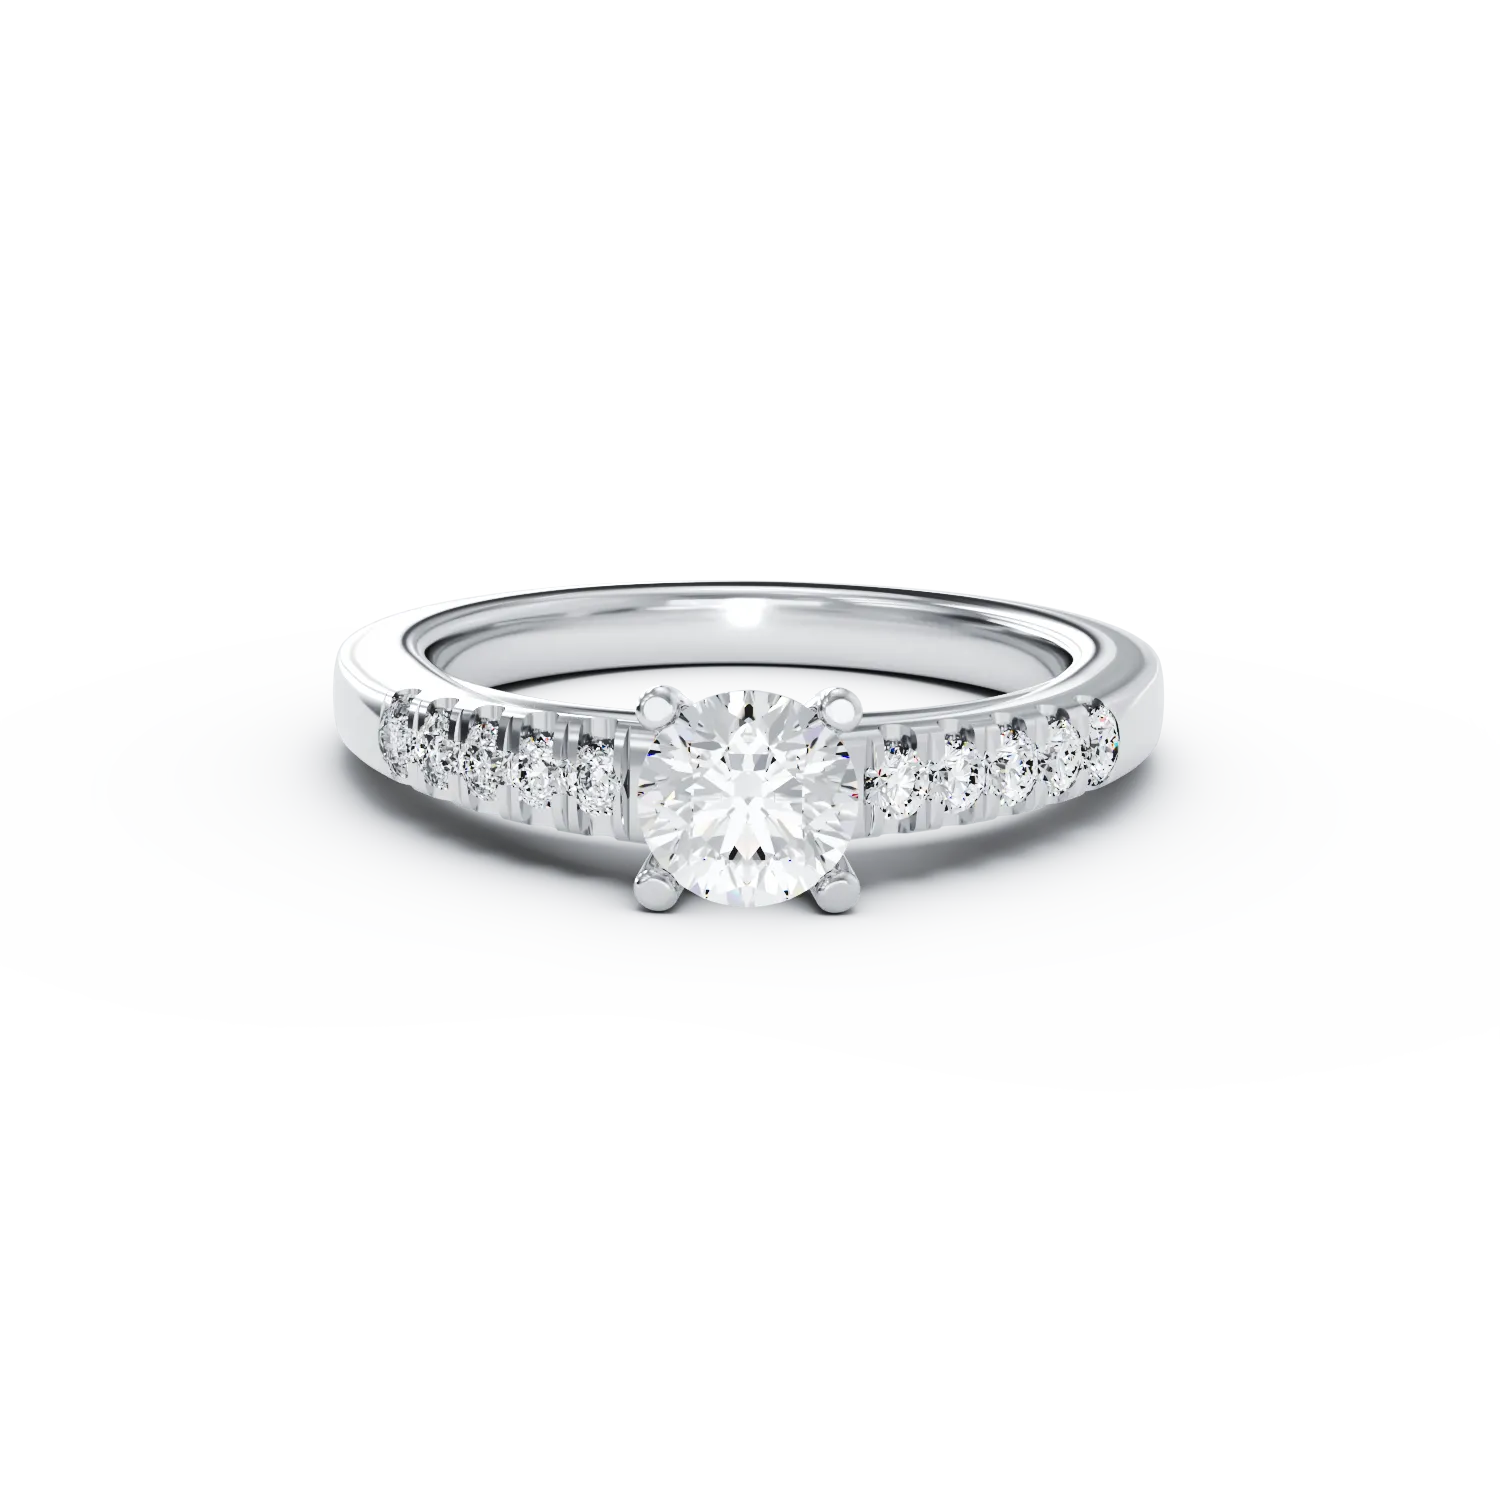 Eljegyzési gyűrű 18K-os fehér aranyból 0,51ct gyémánttal és 0,13ct gyémántokkal. Gramm: 3,18